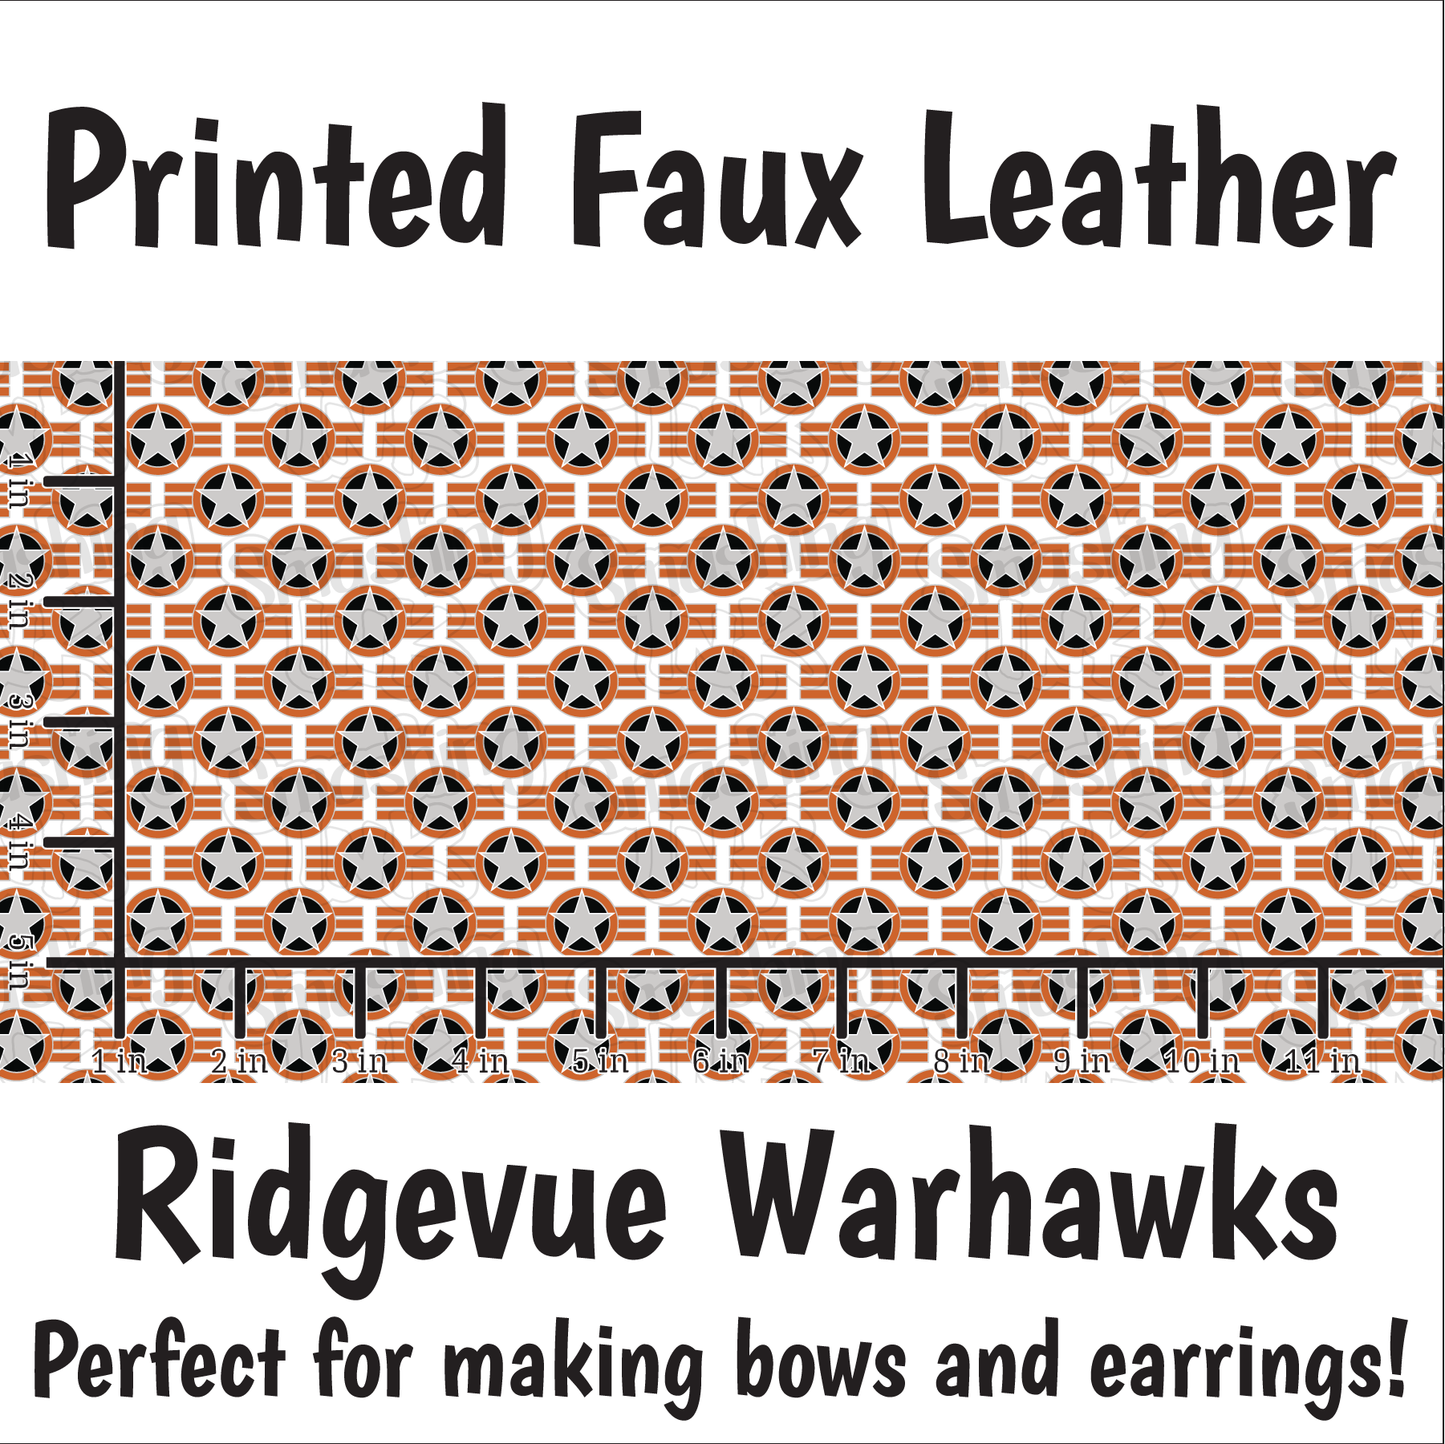 Ridgevue Warhawks - Faux Leather Sheet (SHIPS IN 3 BUS DAYS)